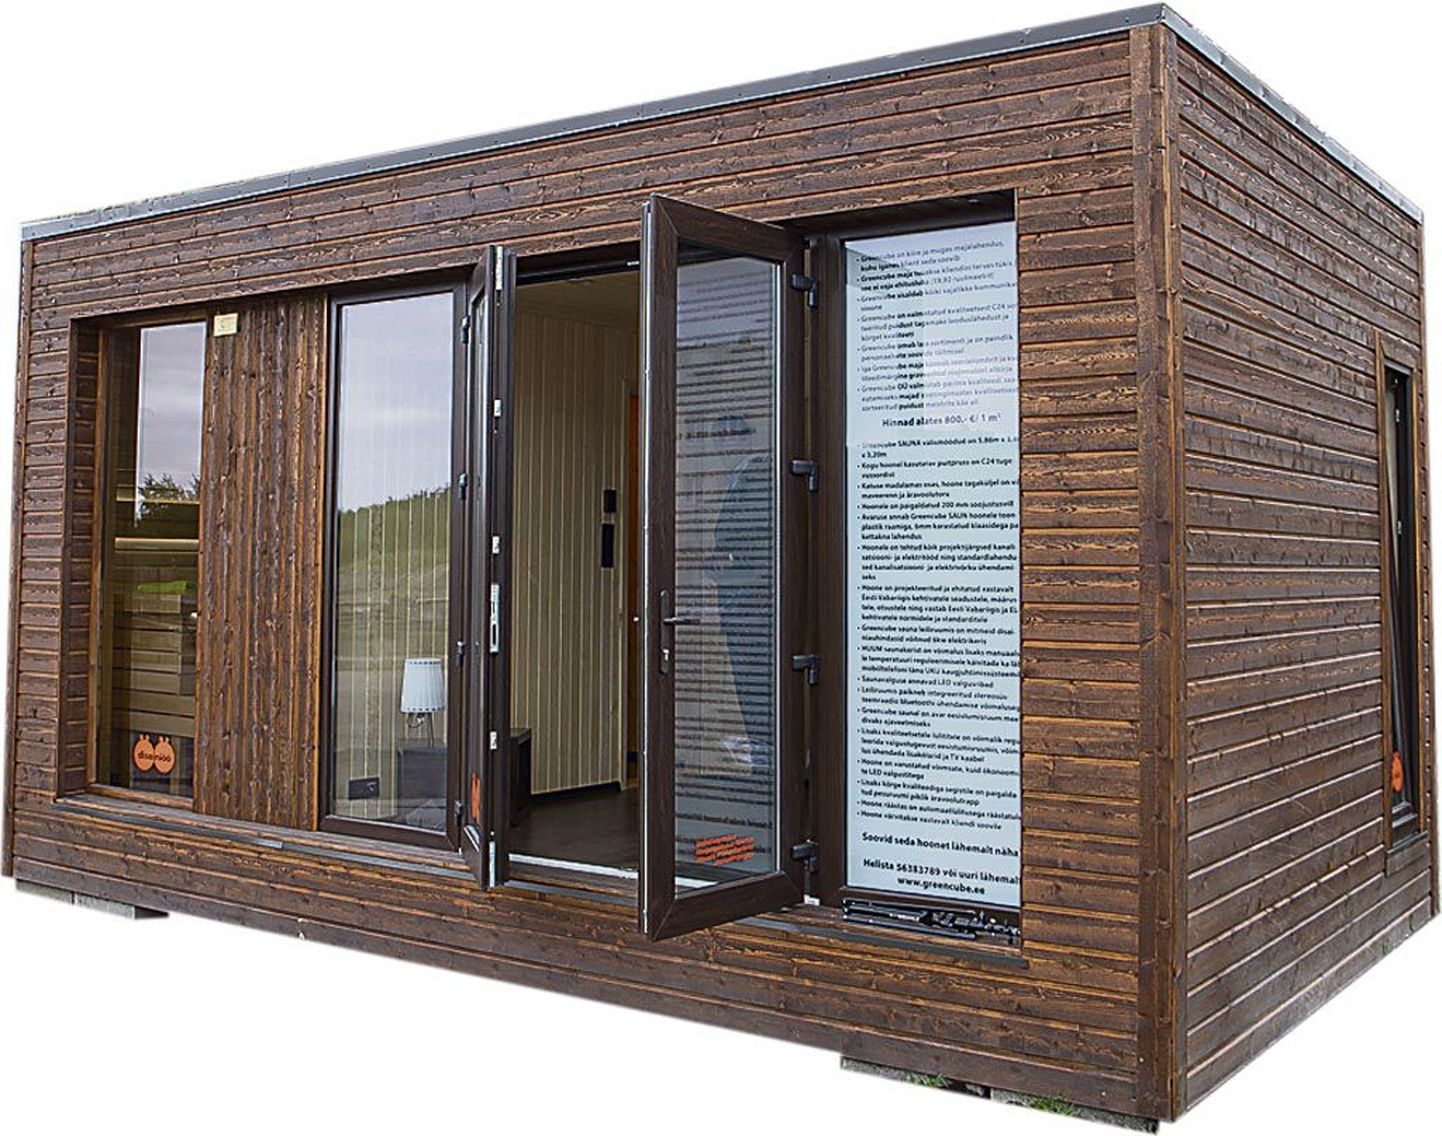 Greencube on ehitanud majamudeleid alates saunadest (pildil) kuni aastaringselt kasutatavate elamuteni välja.